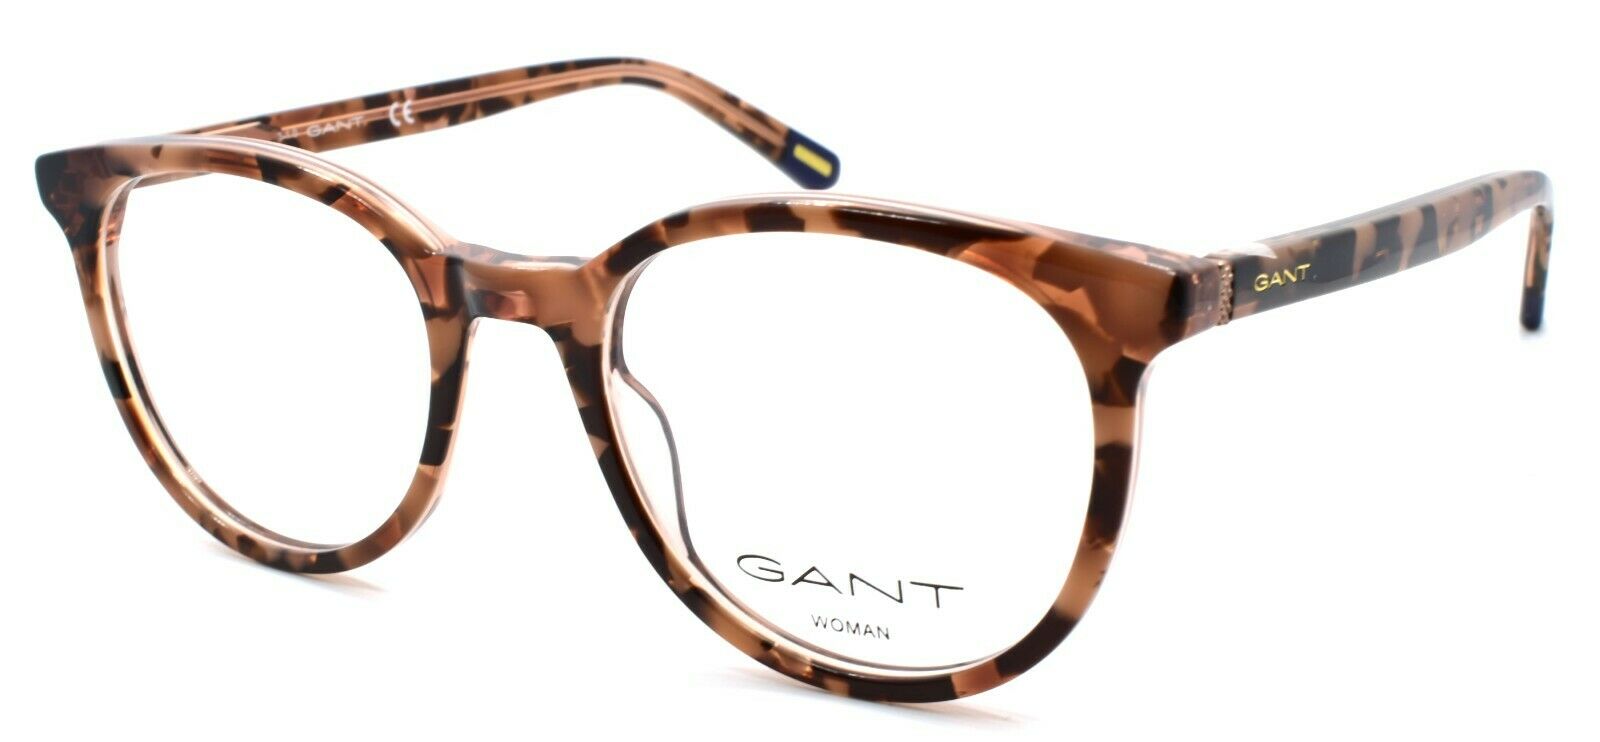 1-GANT GA4087 055 Women's Eyeglasses Frames 50-19-140 Light Brown Havana-889214020642-IKSpecs